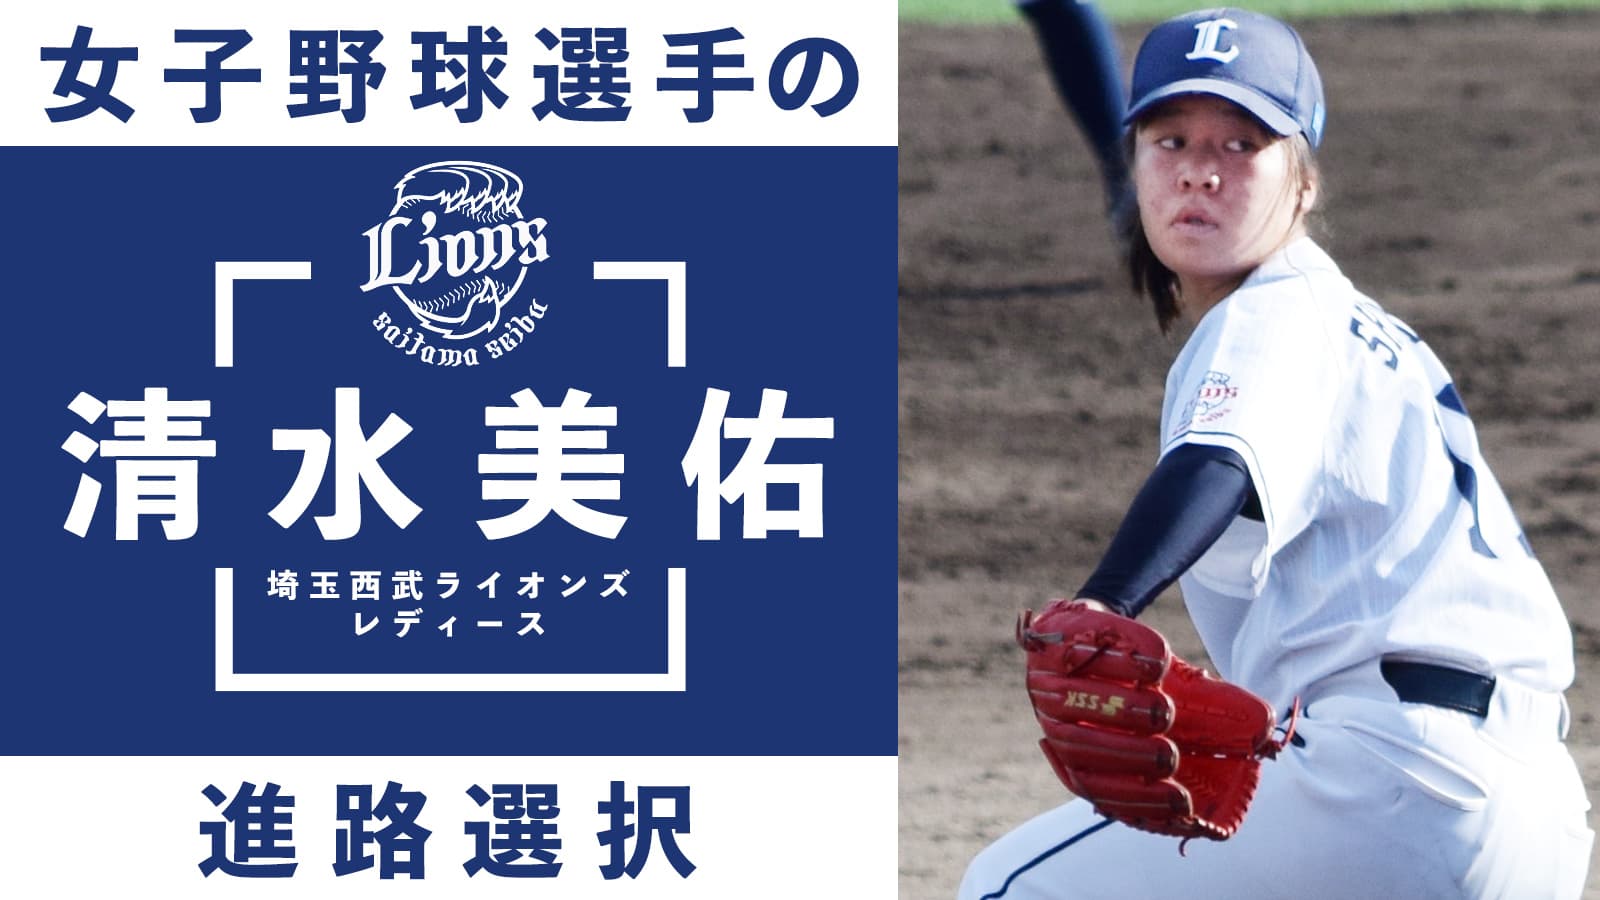 女子野球選手の進路選択「埼玉西武LL清水美佑」